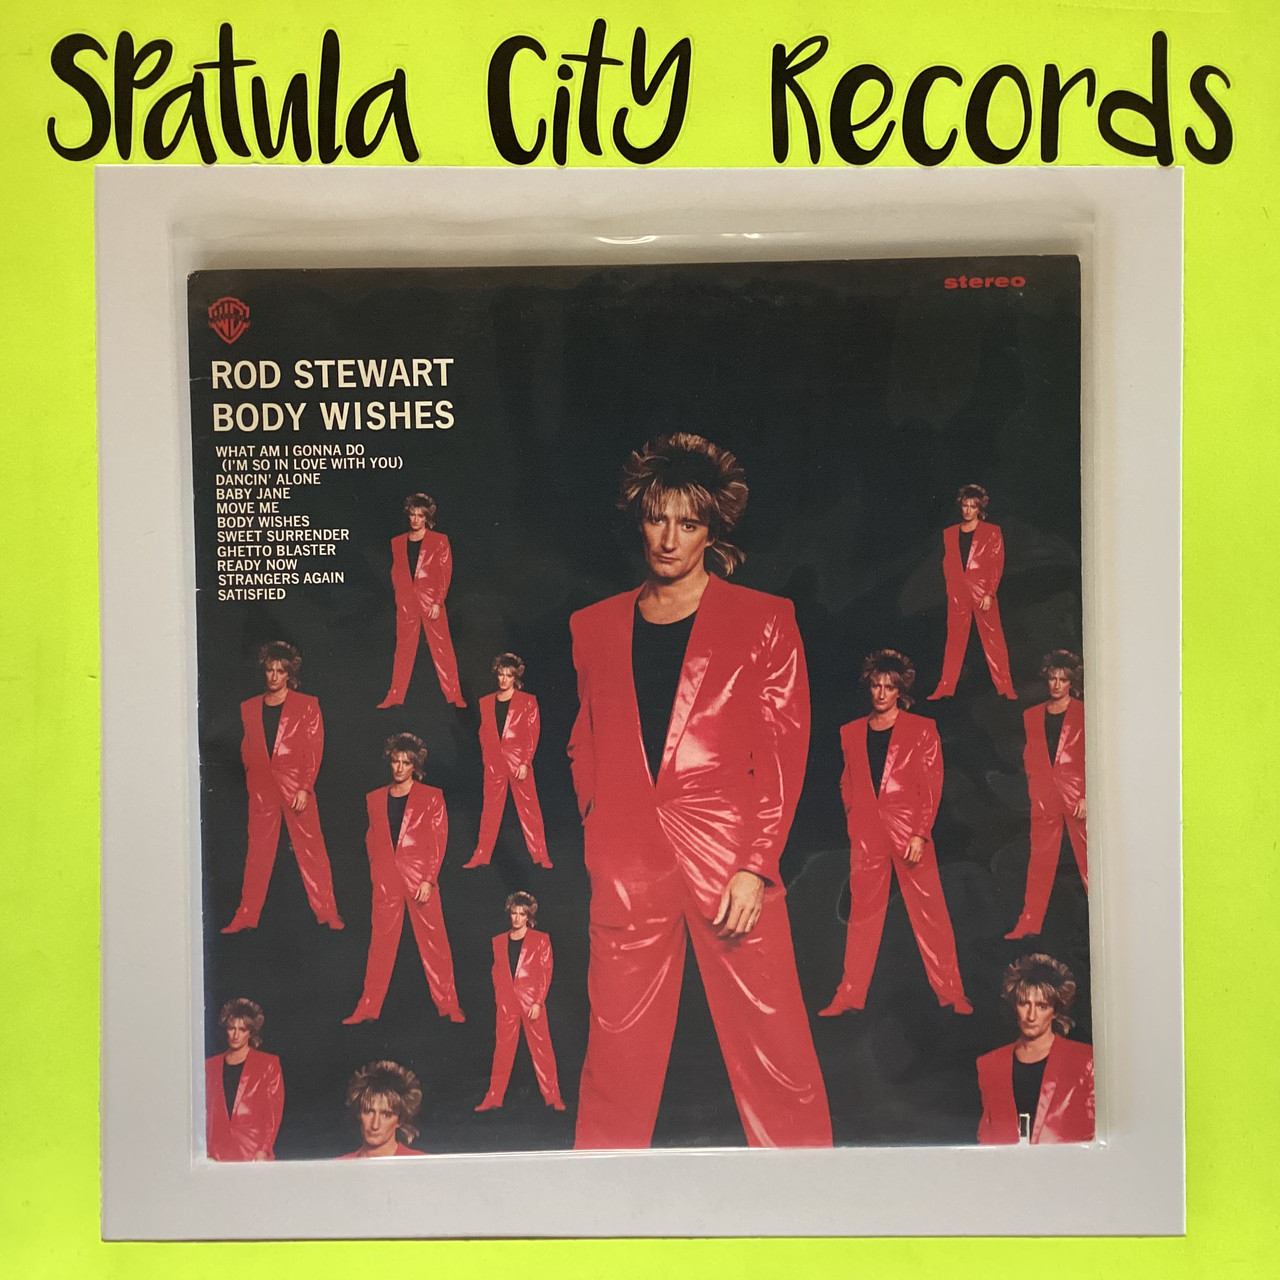 Rod Stewart - Body Wishes - vinyl record album LP